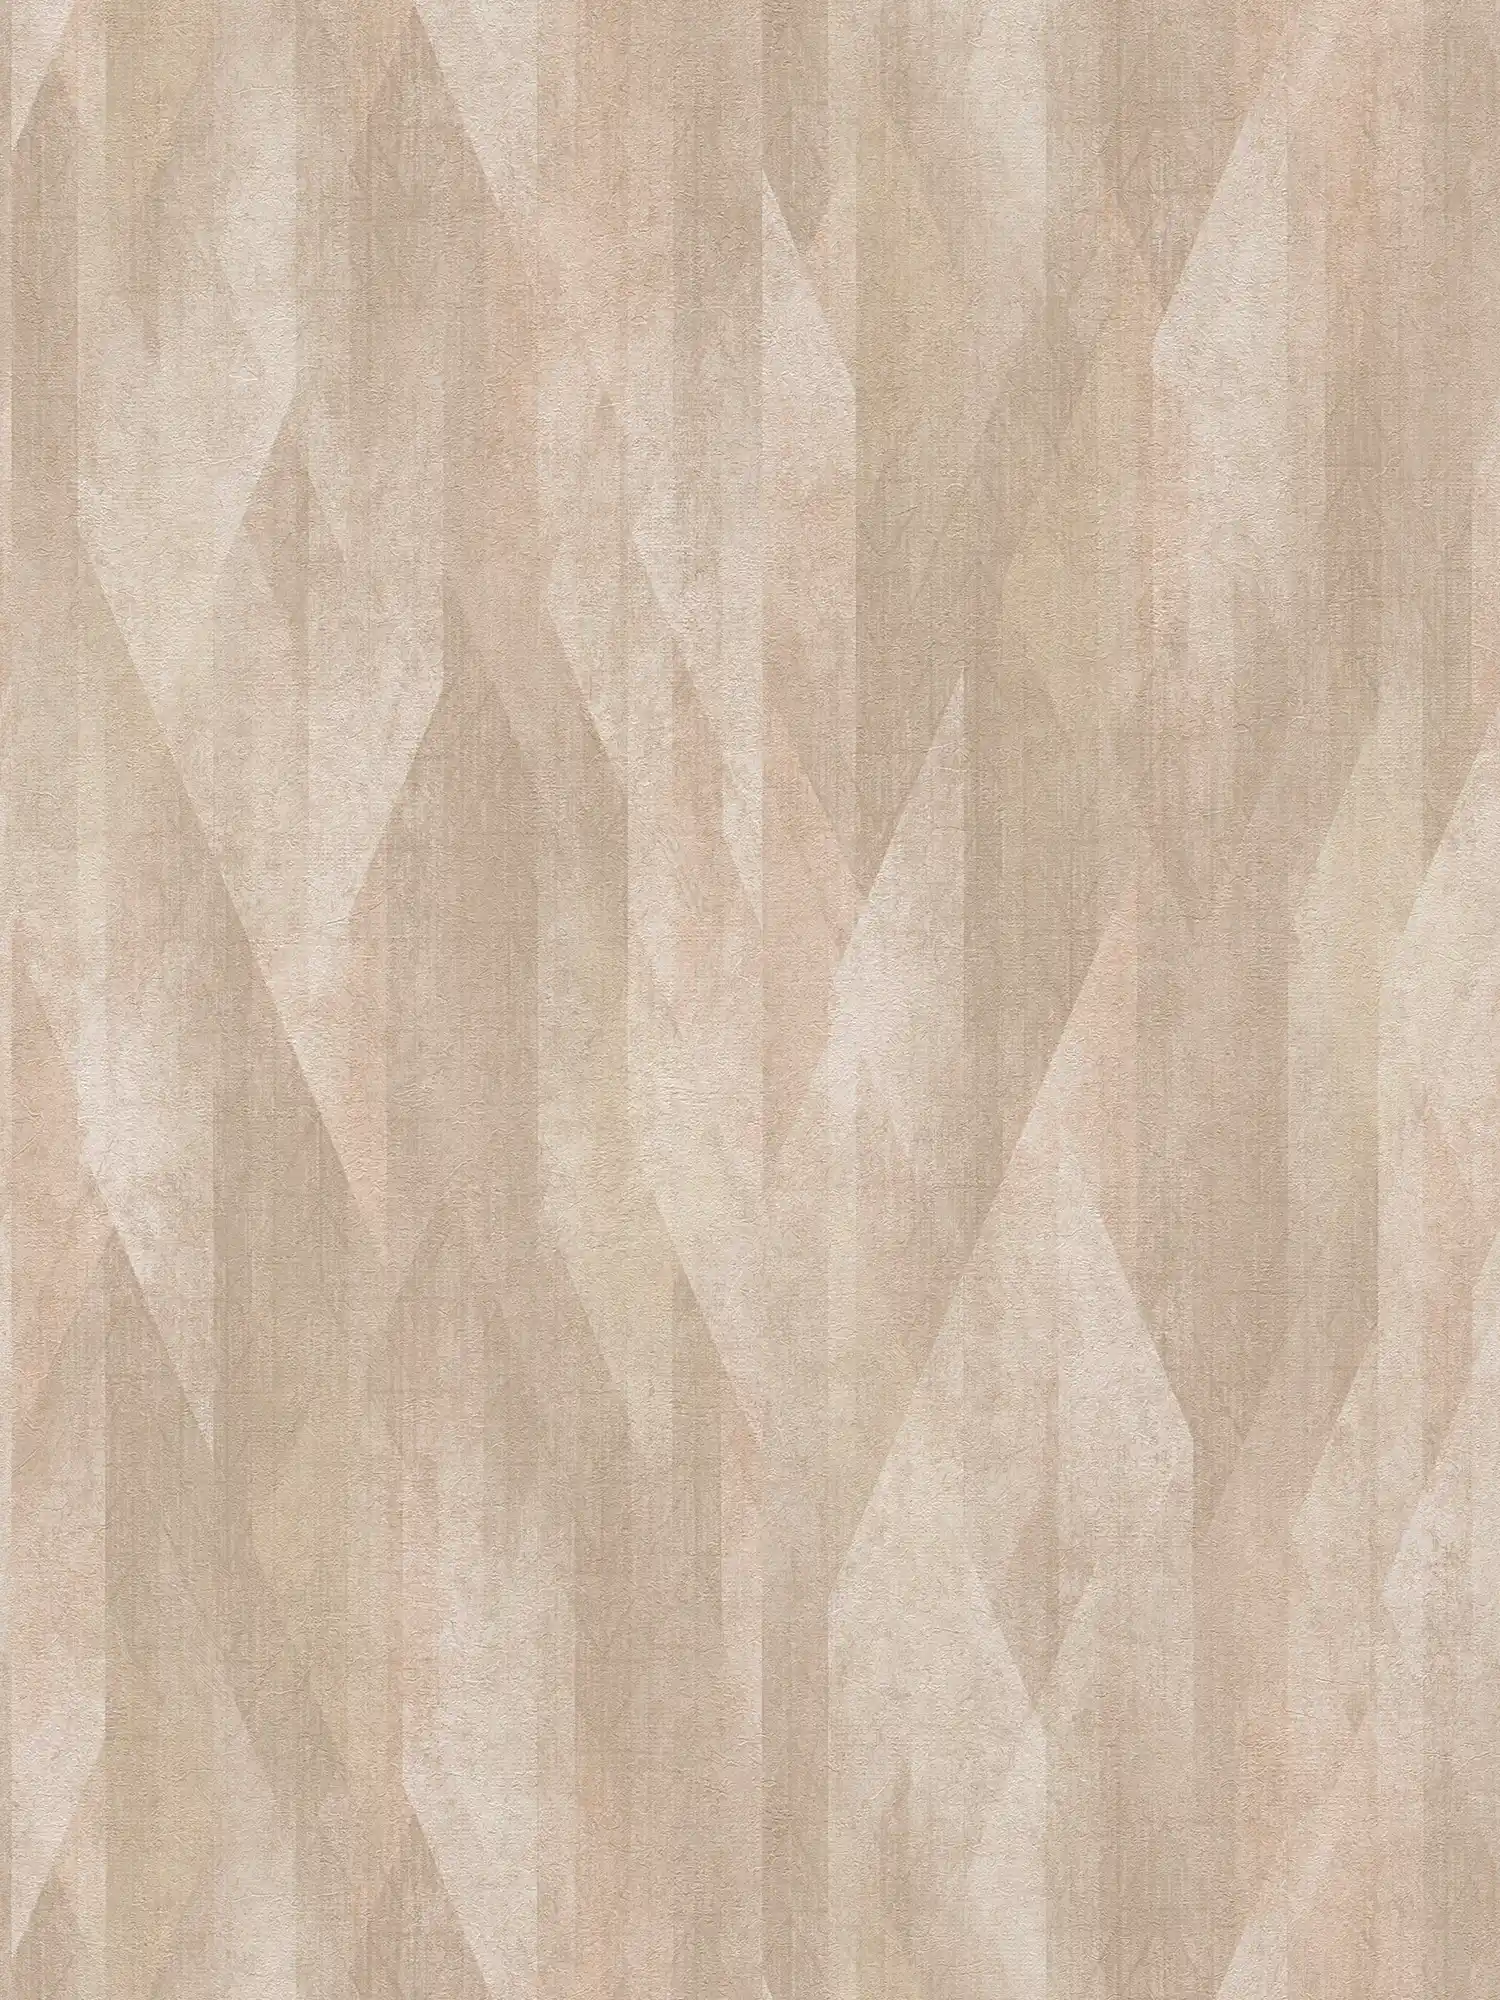             Papel pintado no tejido con diseño gráfico de rombos - beige, marrón
        